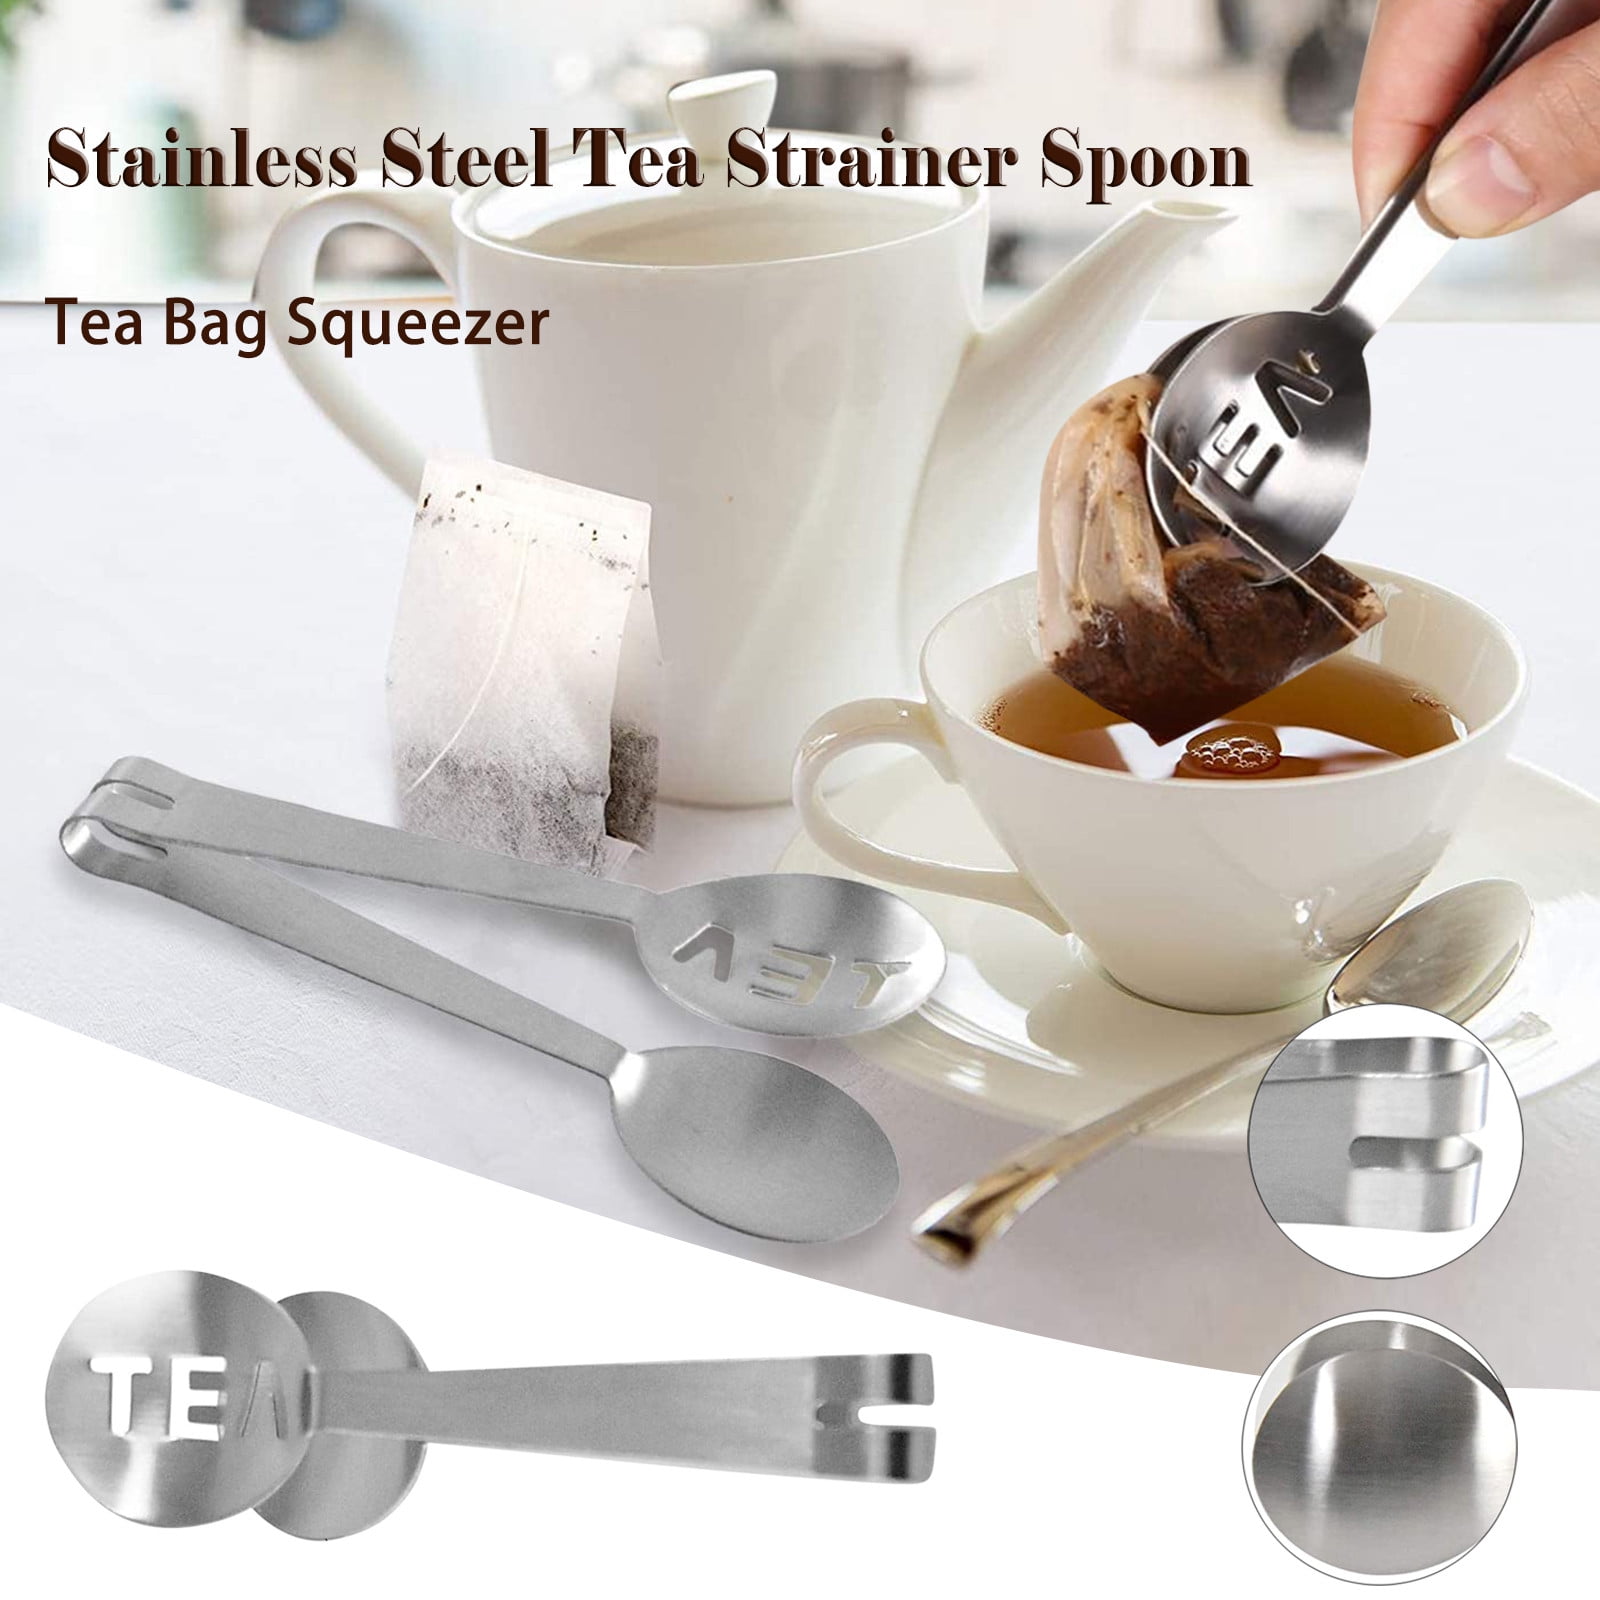 BuleStore Tea Bag Squeezer Stainless Steel Tea Strainer Spoon Long